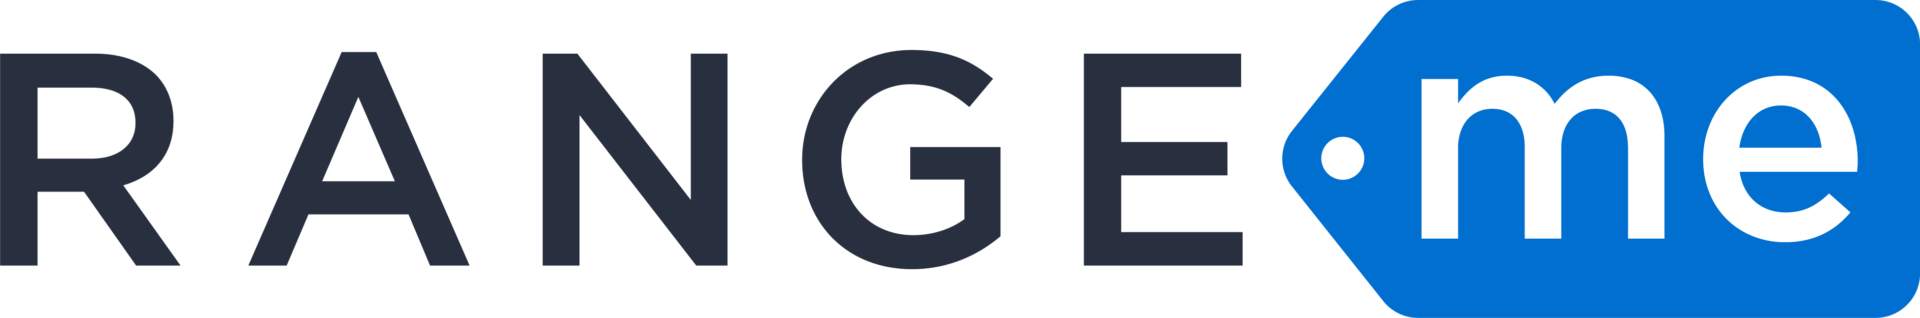 RangeMe logo partner ShippingEasy